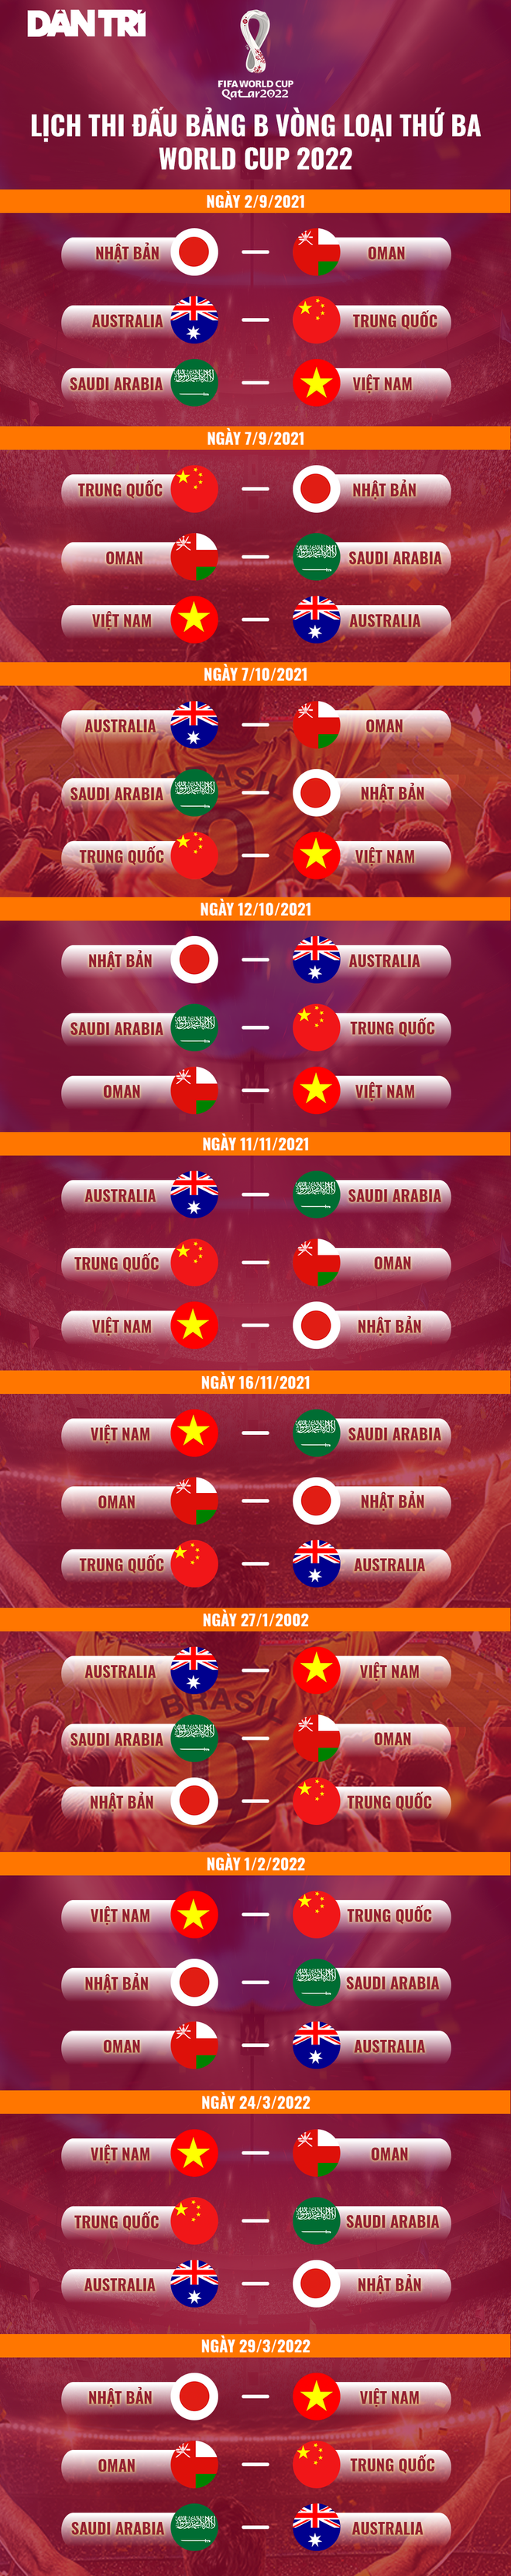 Lộ sân nhà của Trung Quốc ở trận đấu gặp đội tuyển Việt Nam - 3